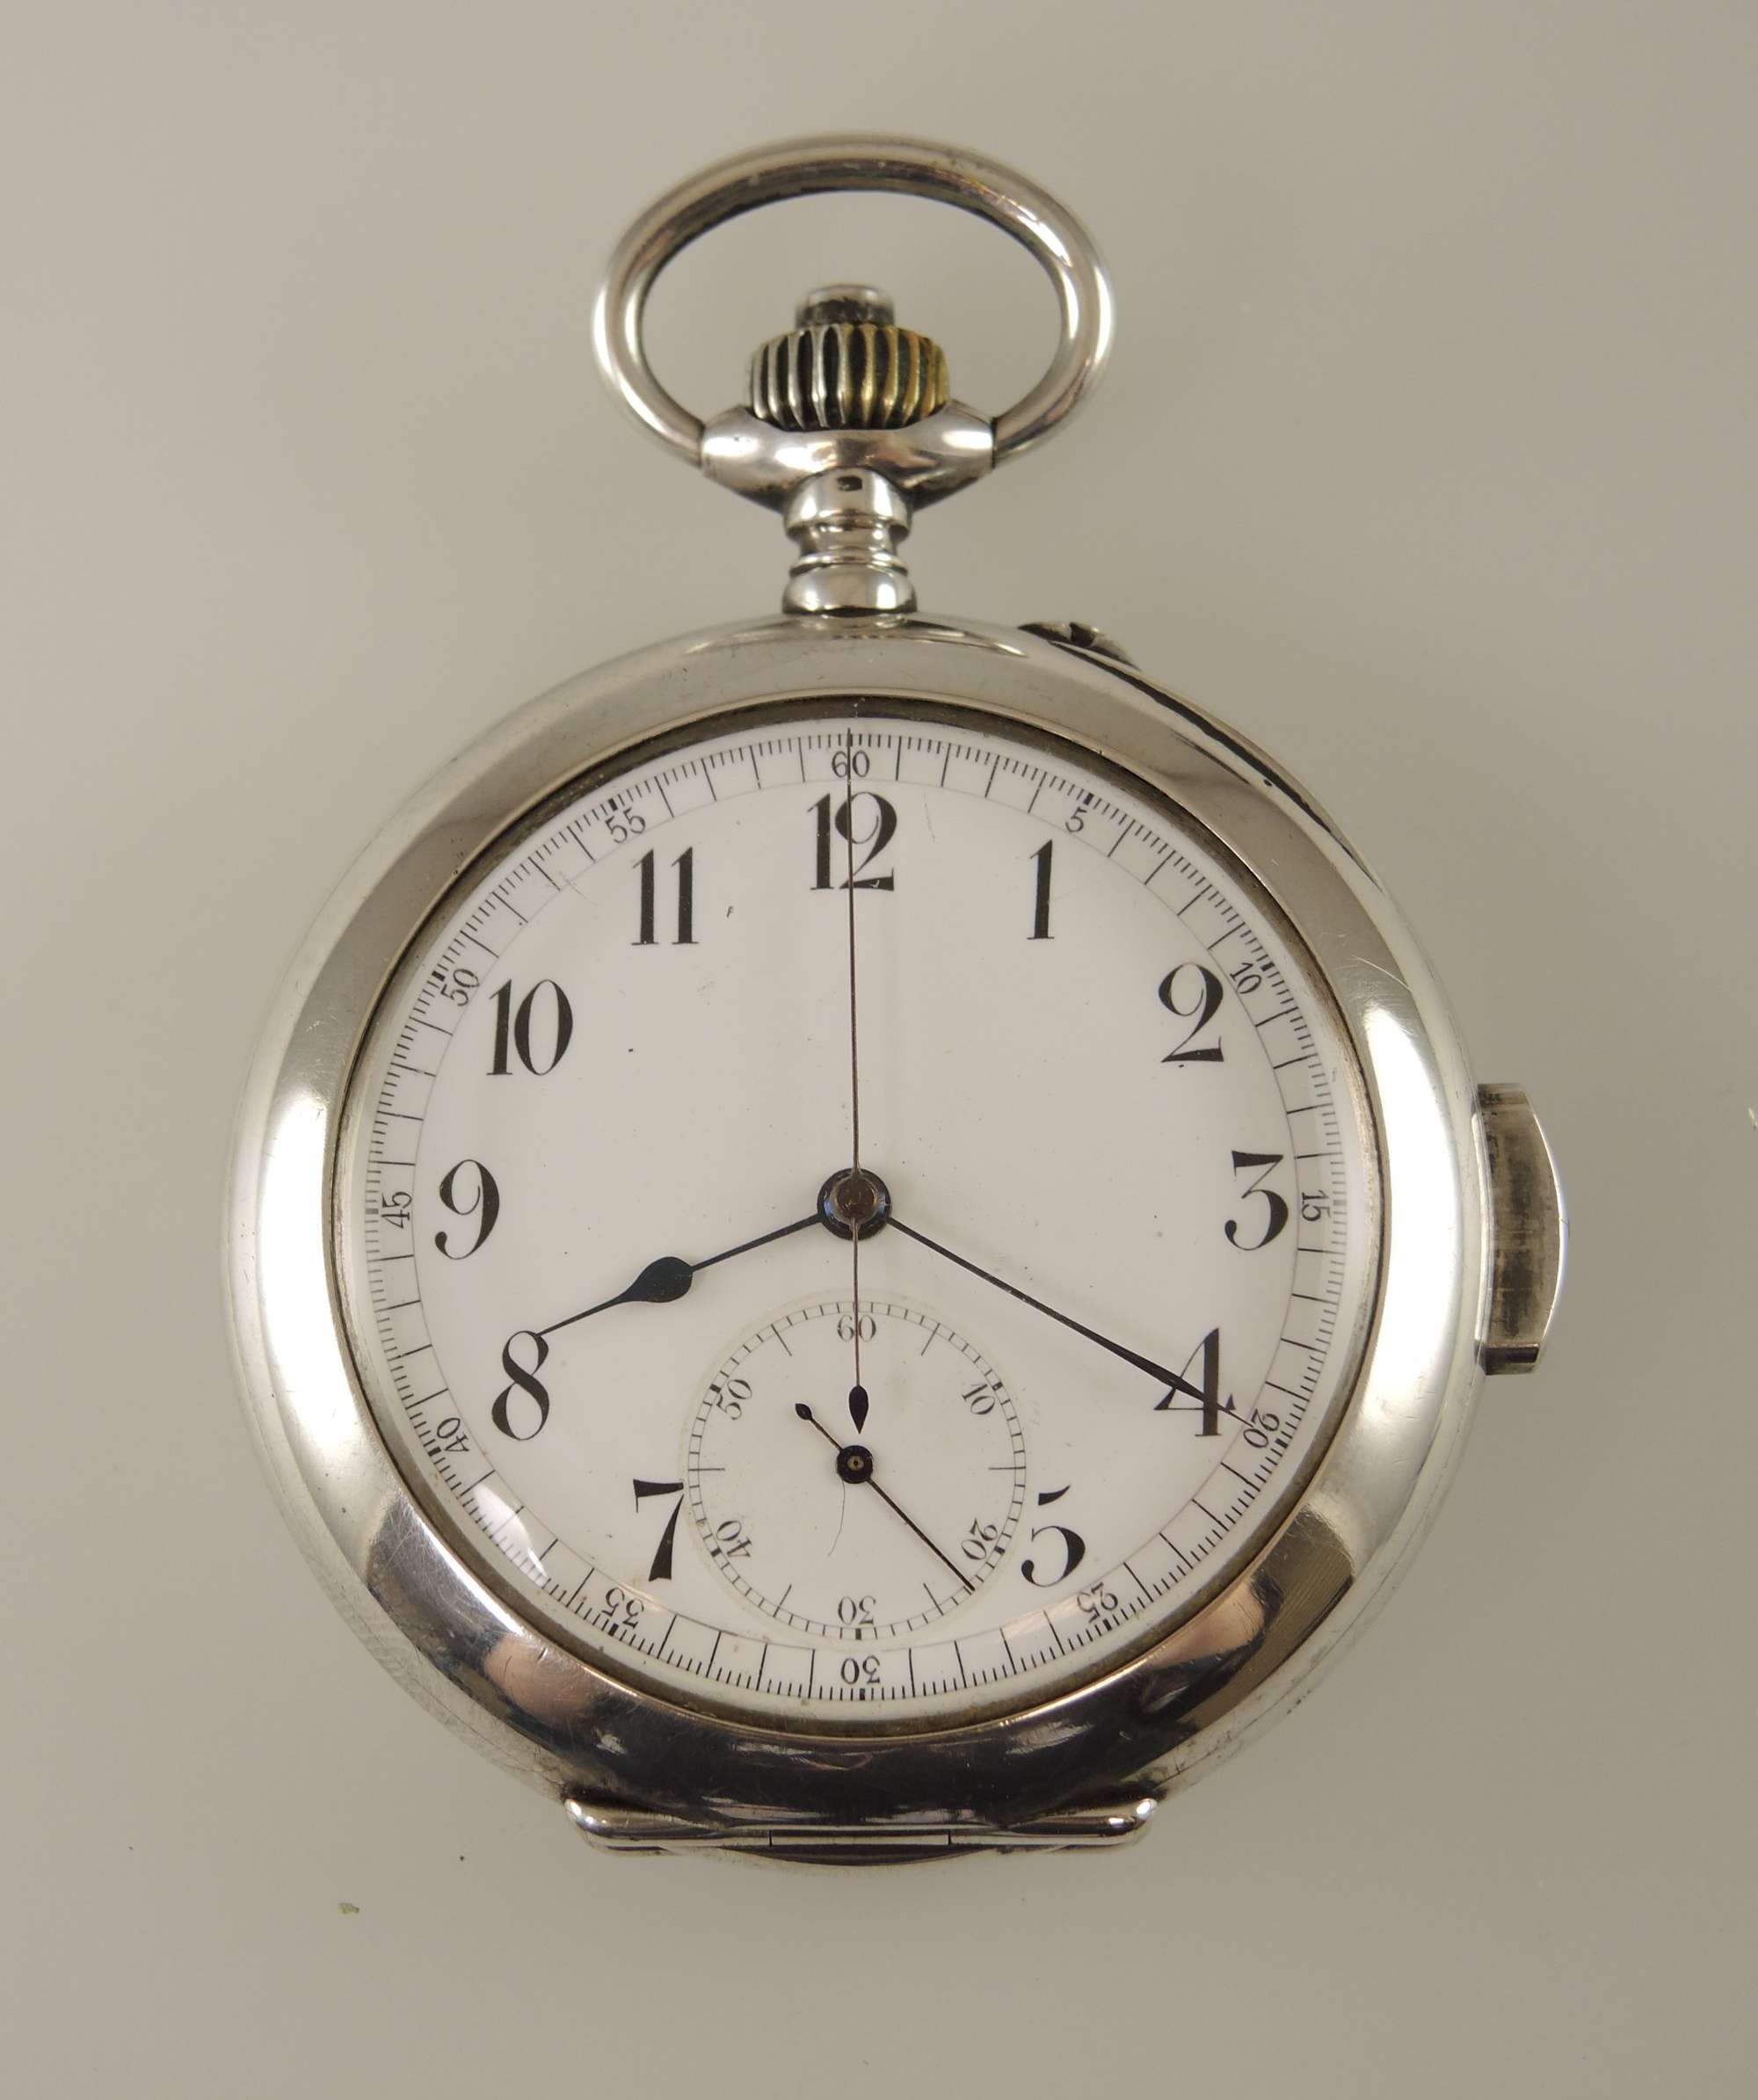 Rare silver Quarter REPEATER chronograph pocket watch c1890